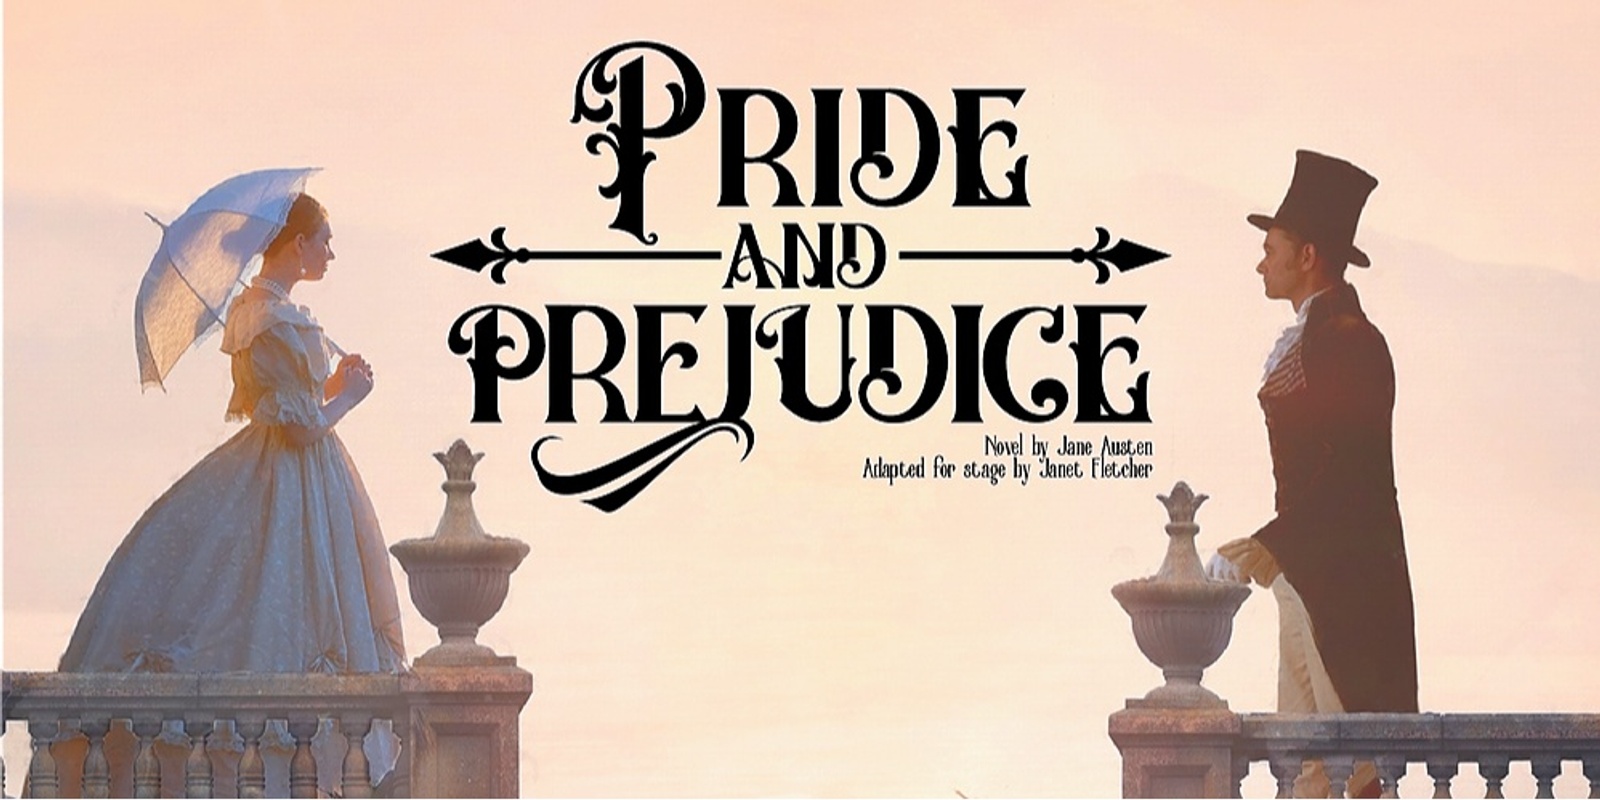 Banner image for Pride and Prejudice - Saint Ignatius College Year 12 Drama